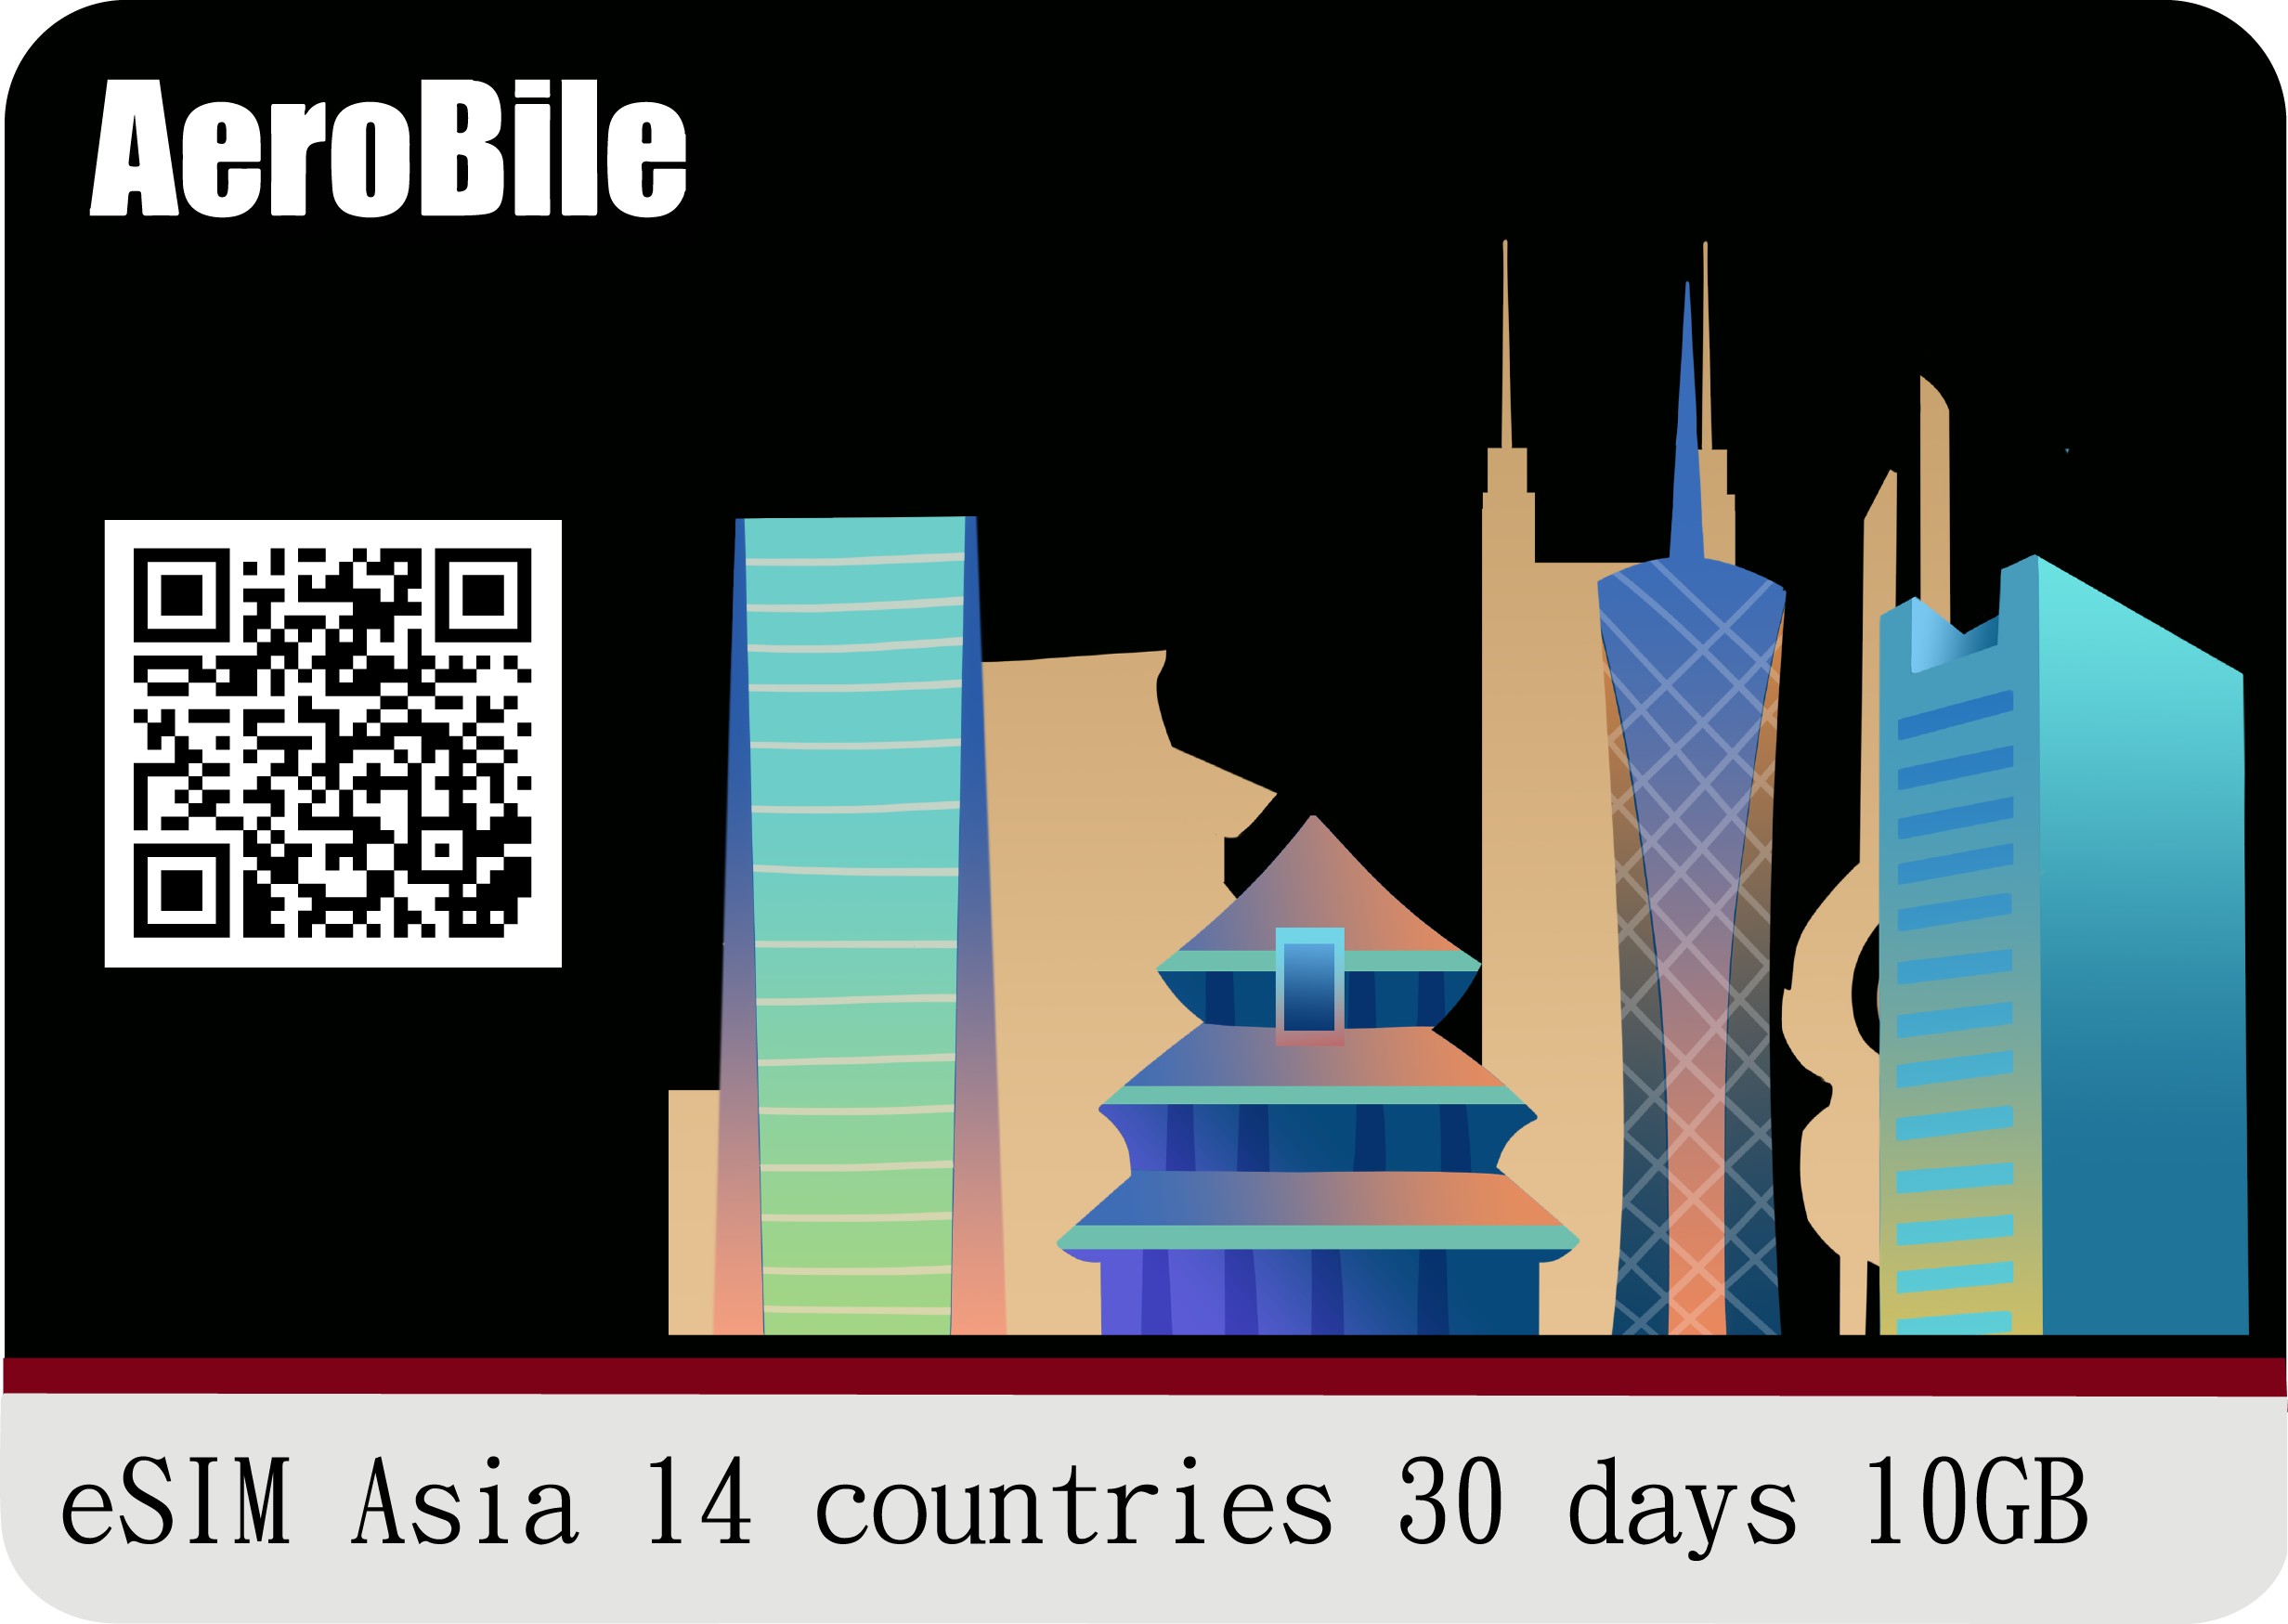 eSIM Asia 14 countries 30 days 10GB